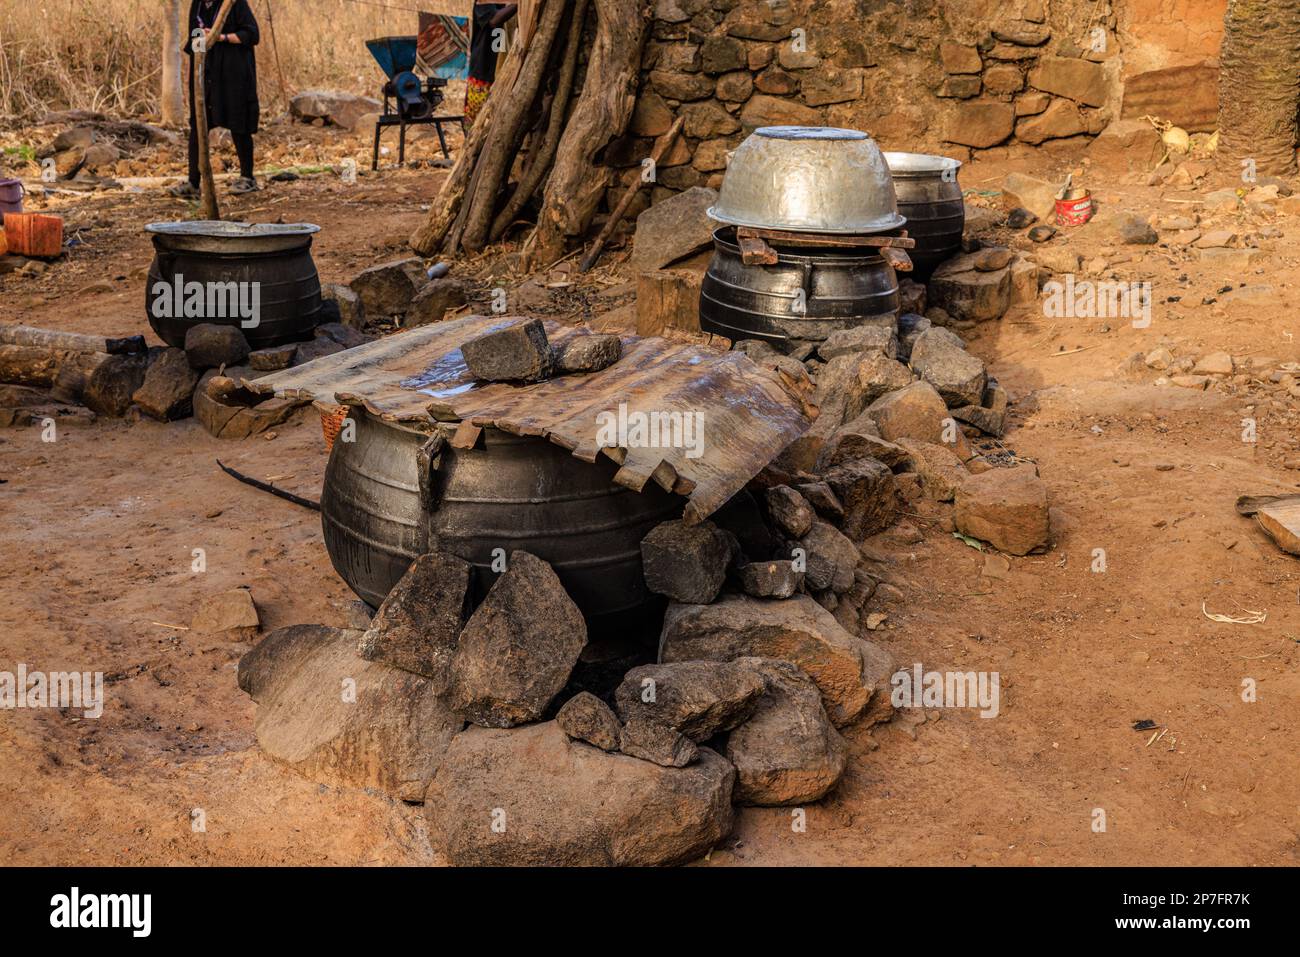 une petite brasserie de village rural fait bouillir le millet dans des pots de métal en feu ouvert pour préparer de la bière millet tchouk au togo en afrique Banque D'Images